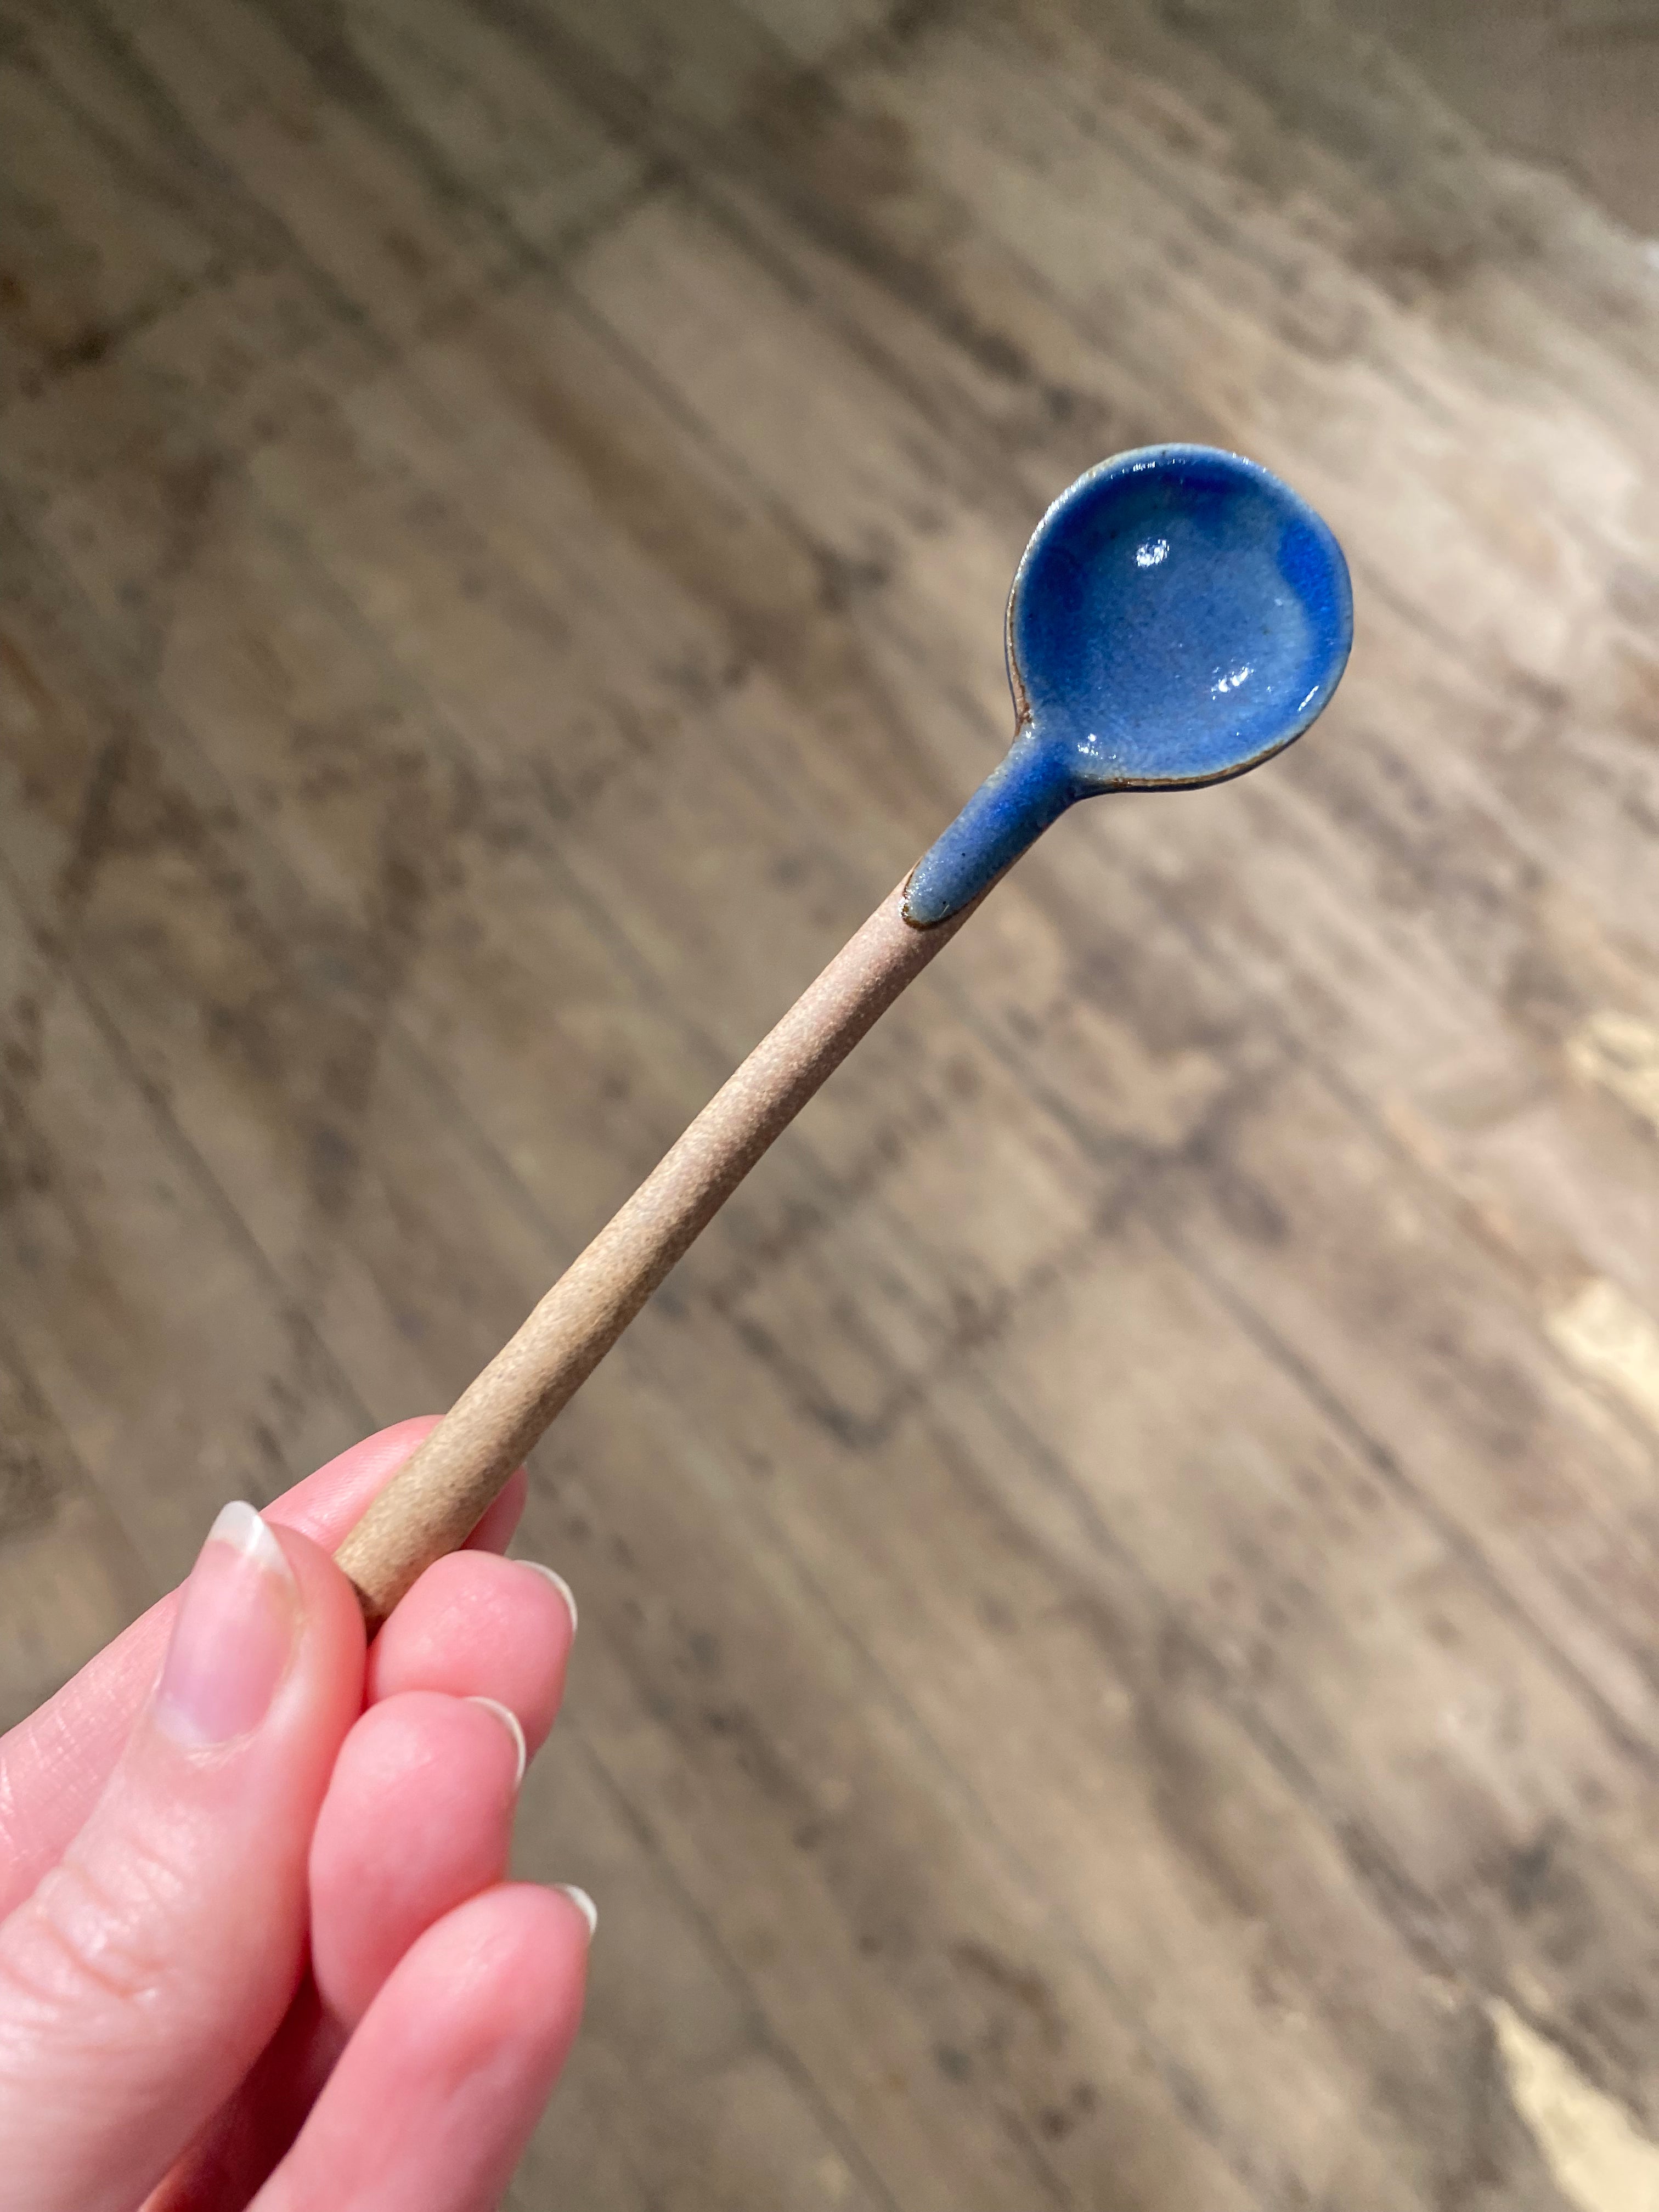 Ceramic spoon with blue glaze